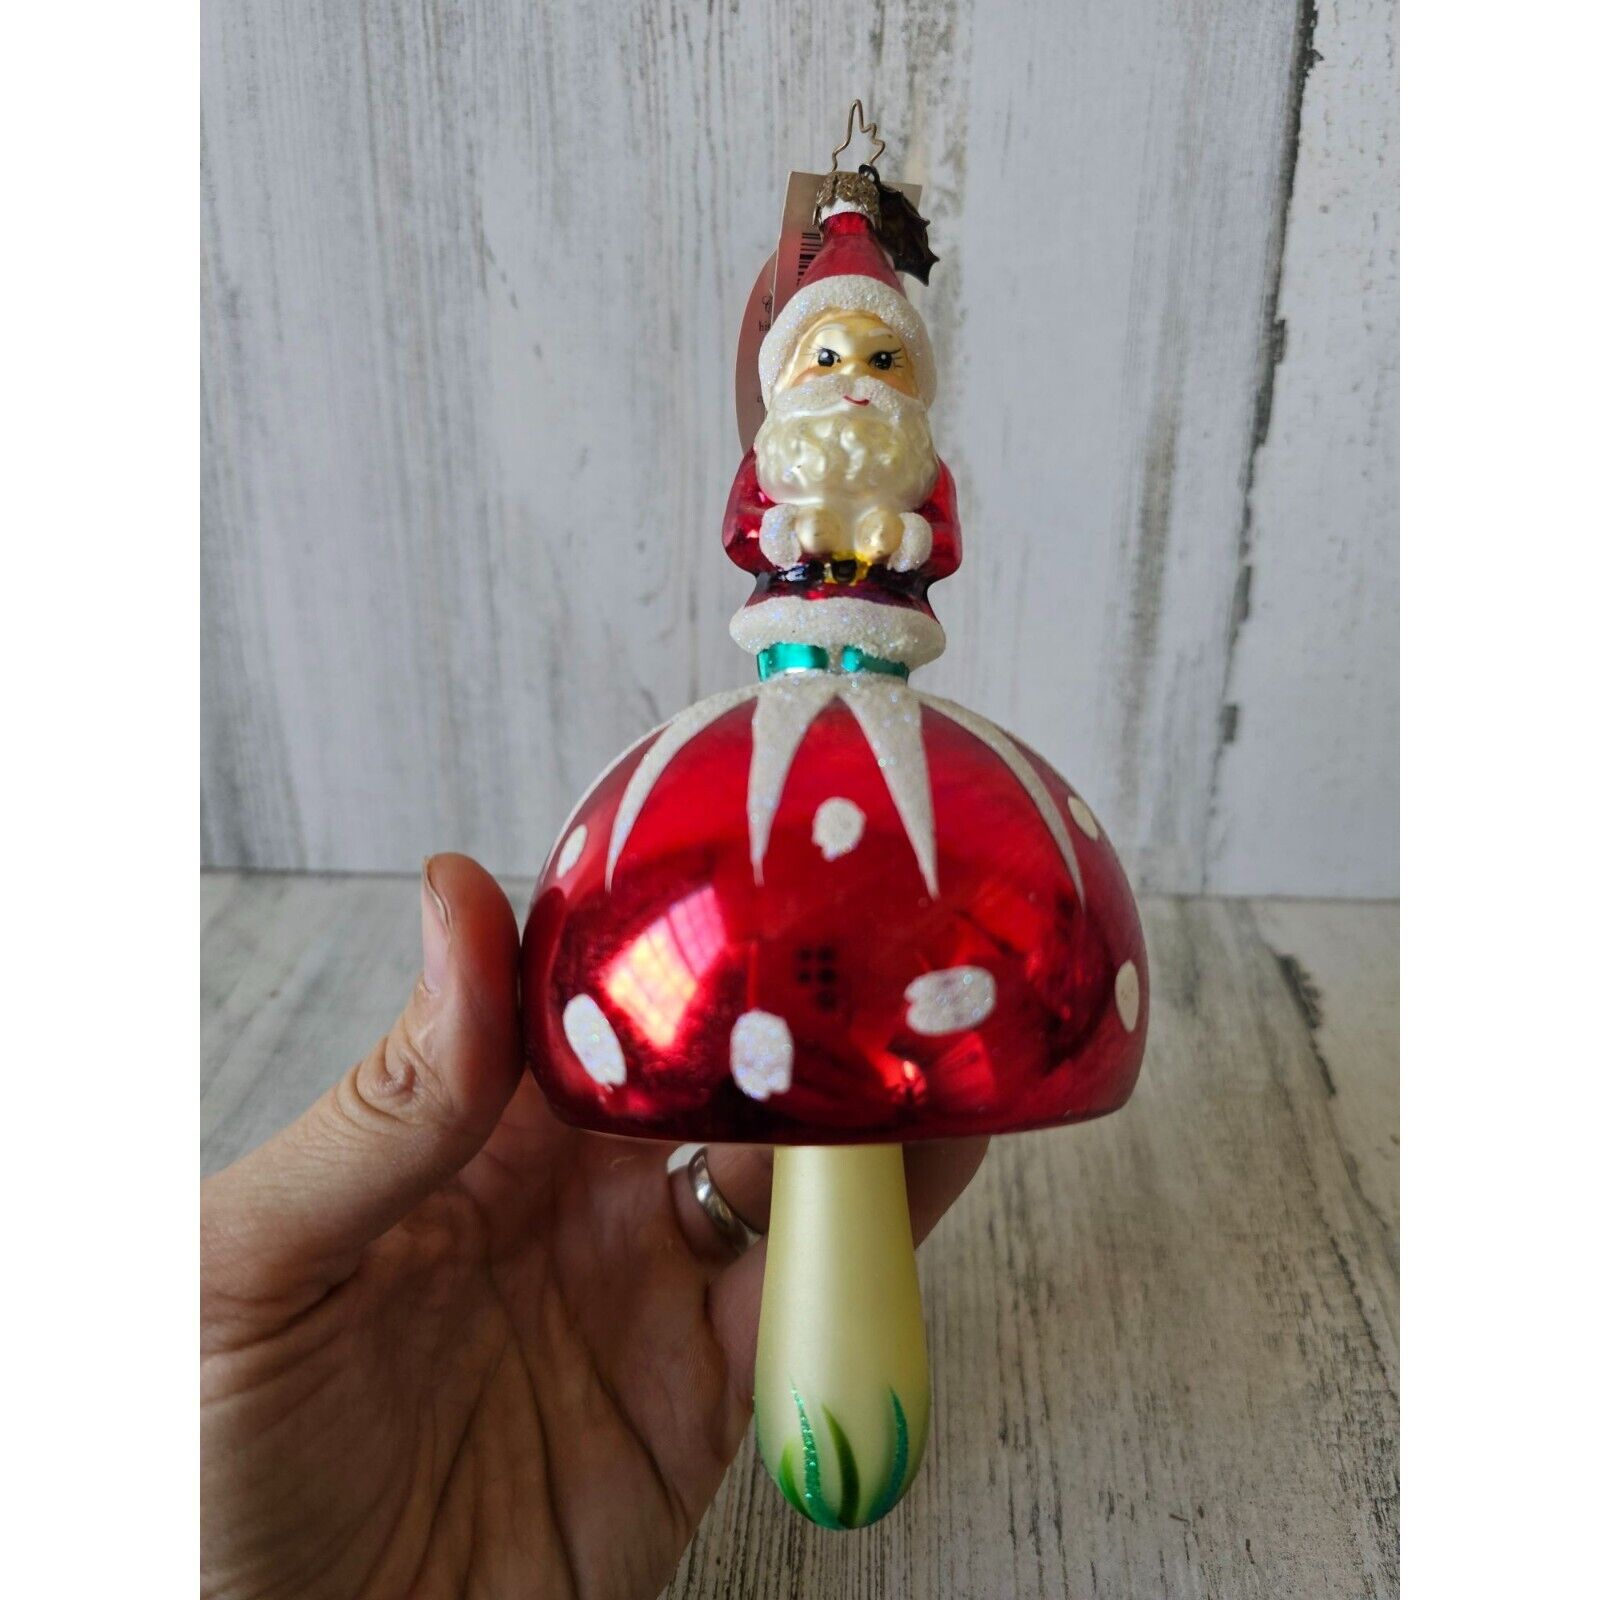 Radko Santa 'shroom mushroom vintage ornament vintage rare